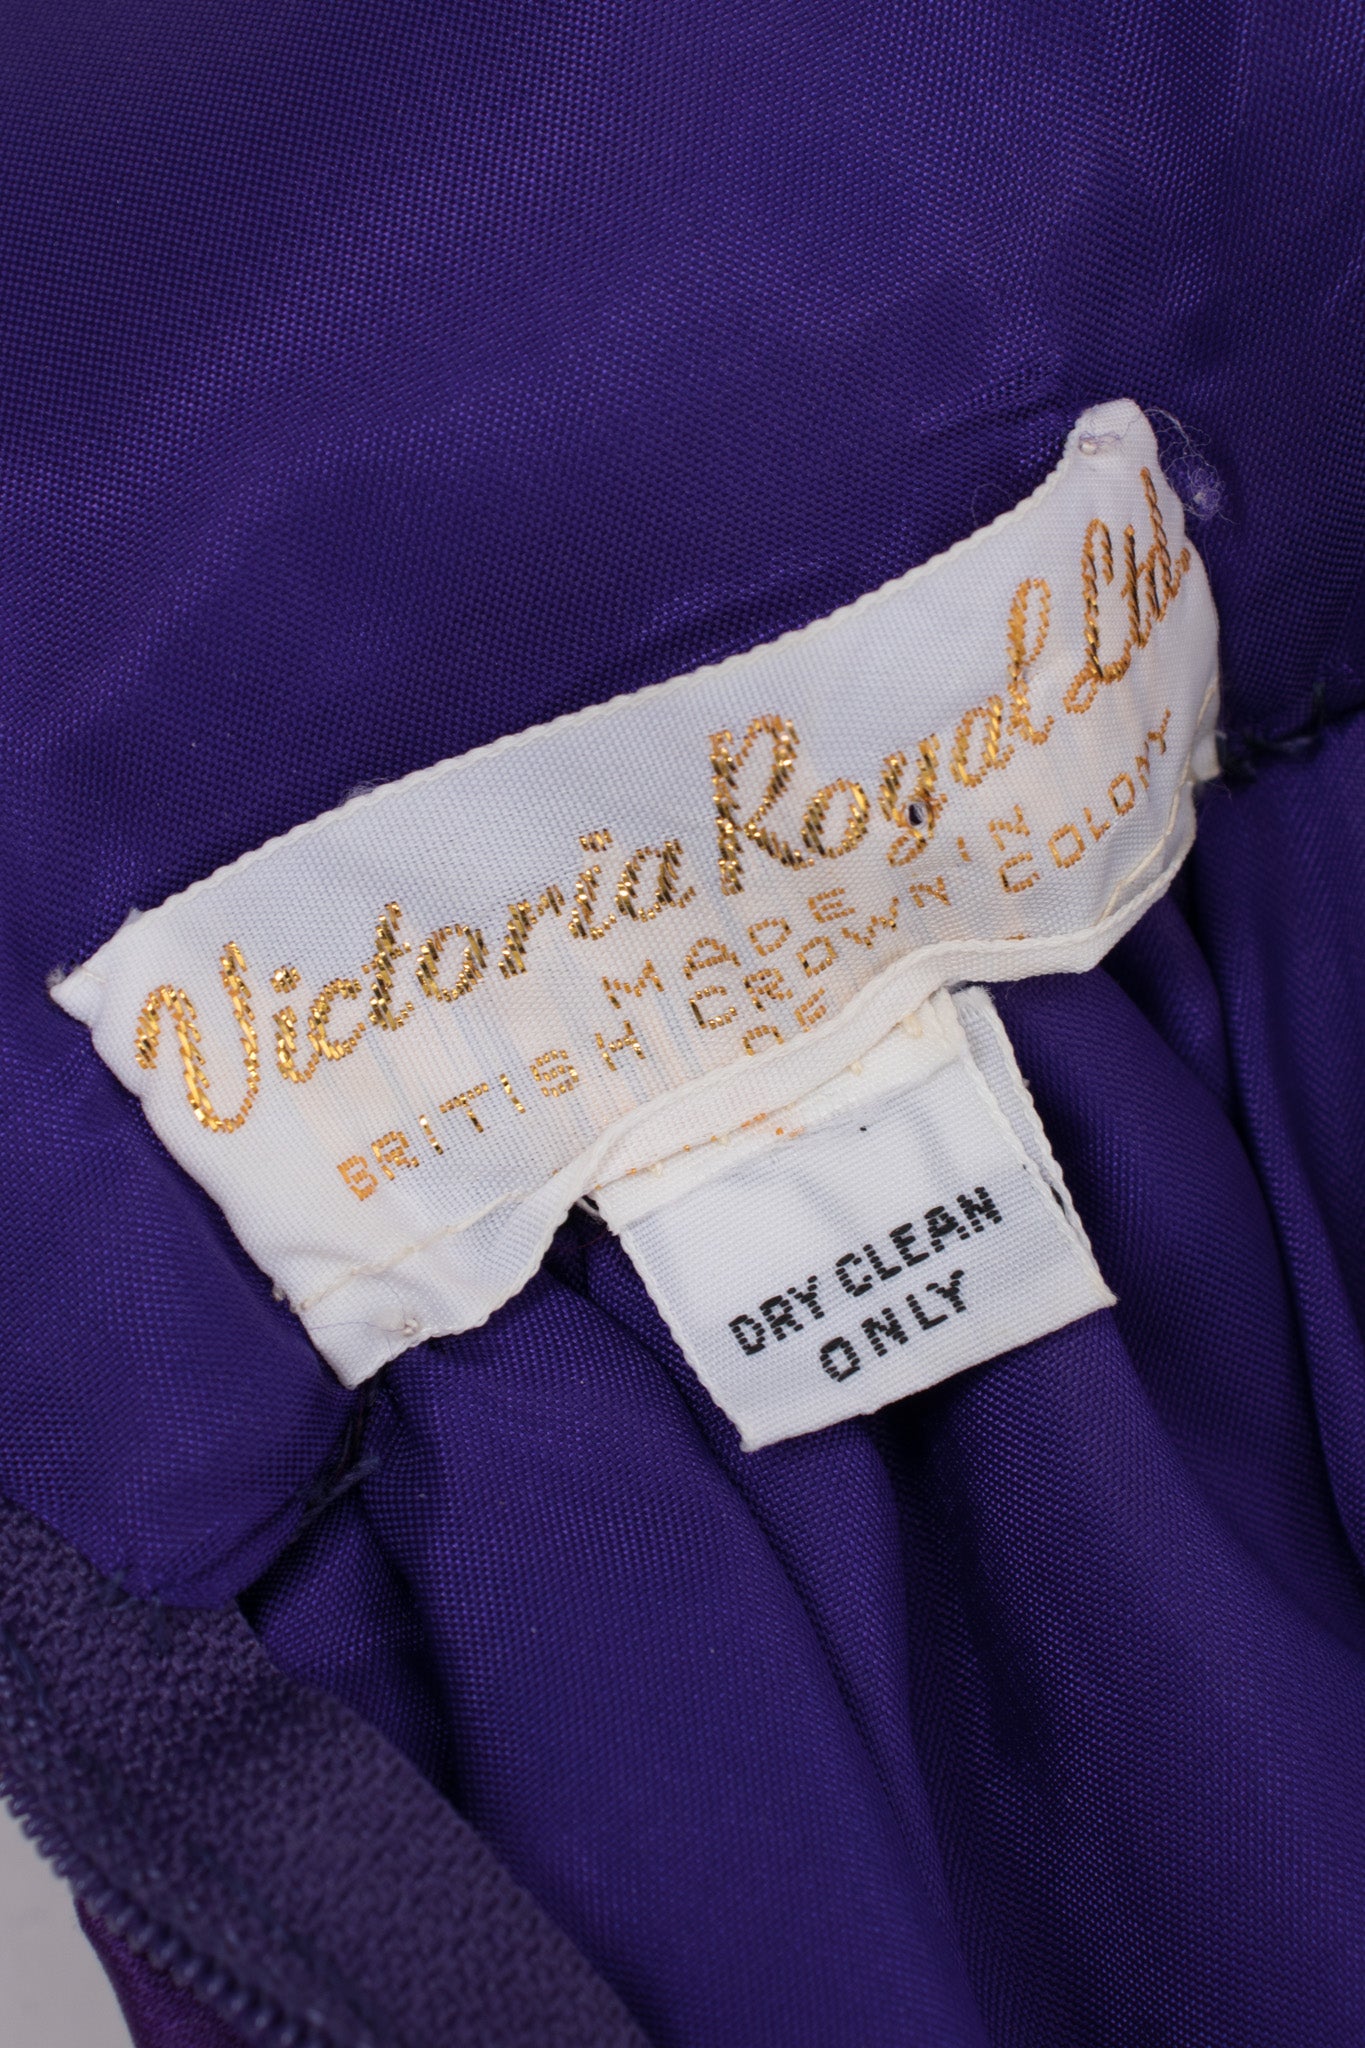 Victoria Royal Jewel Tone Embellished Halter Dress